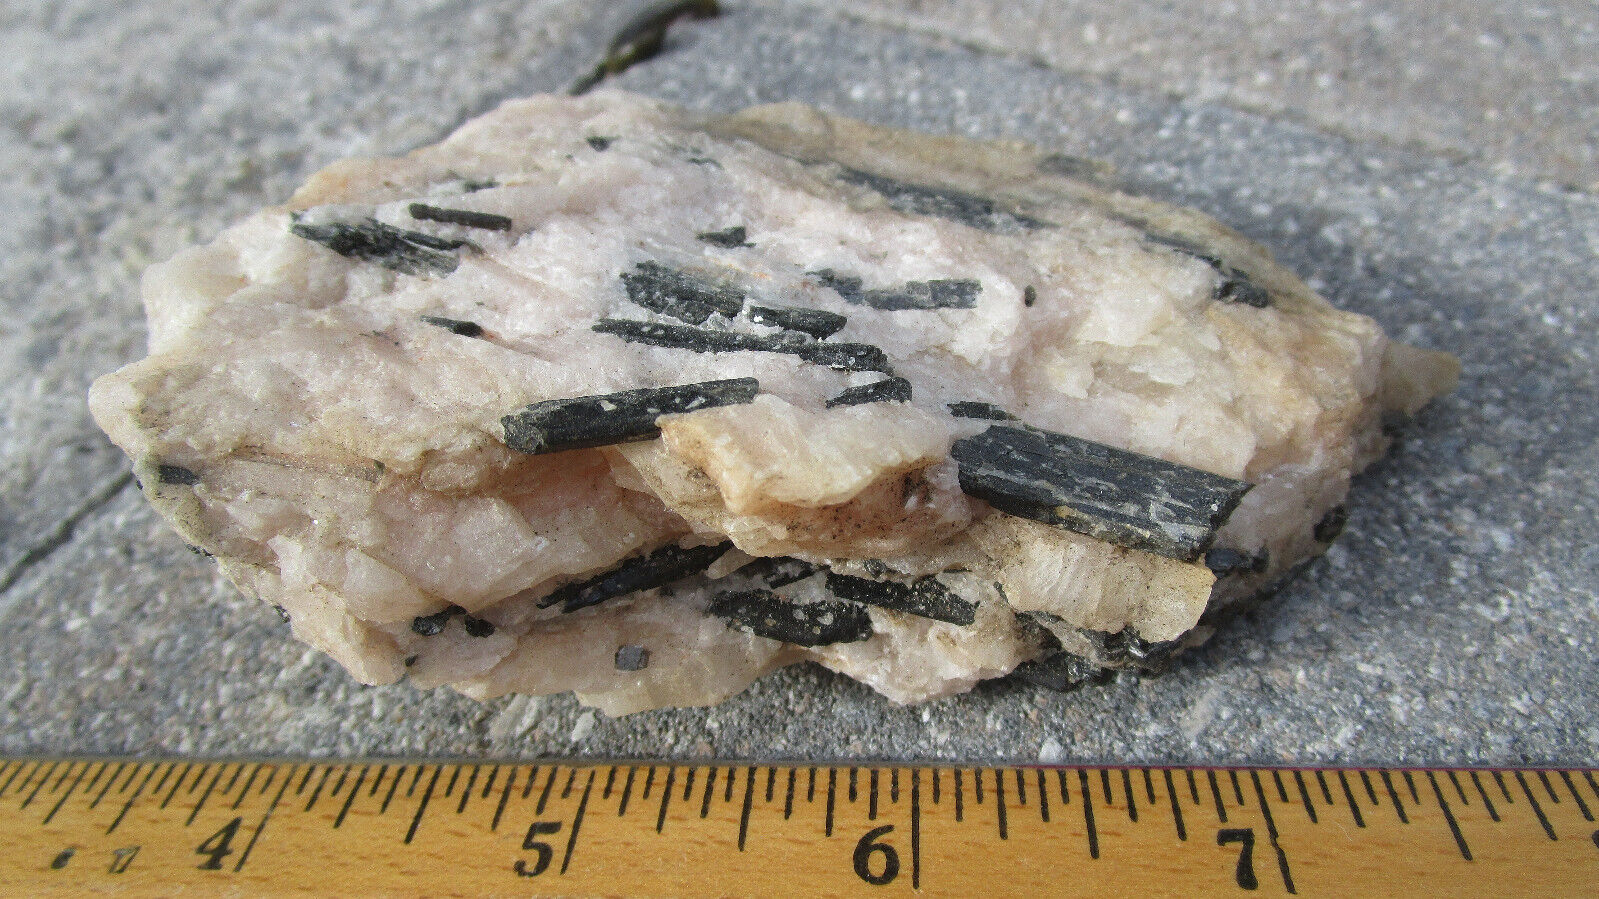 Large Rare Fluoro-Richterite on Fluorescent calcite mineral rock Canada O3